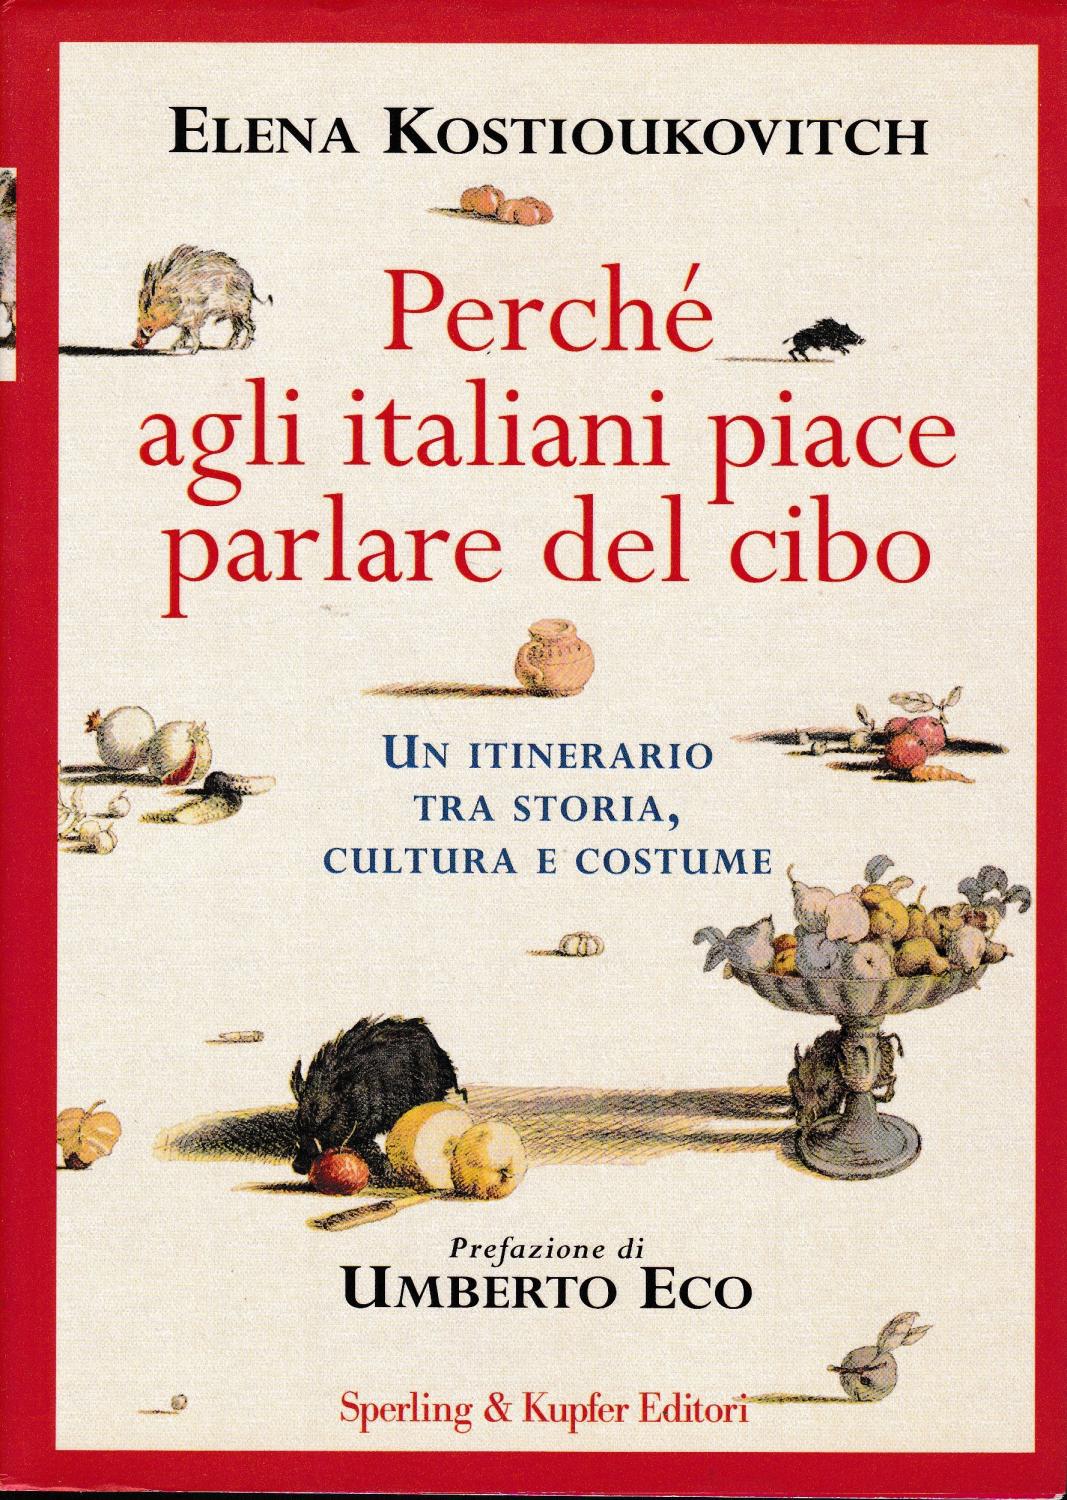 libri_cibo_kostioukovitch_perche_italiani_piace_parlare_cibo